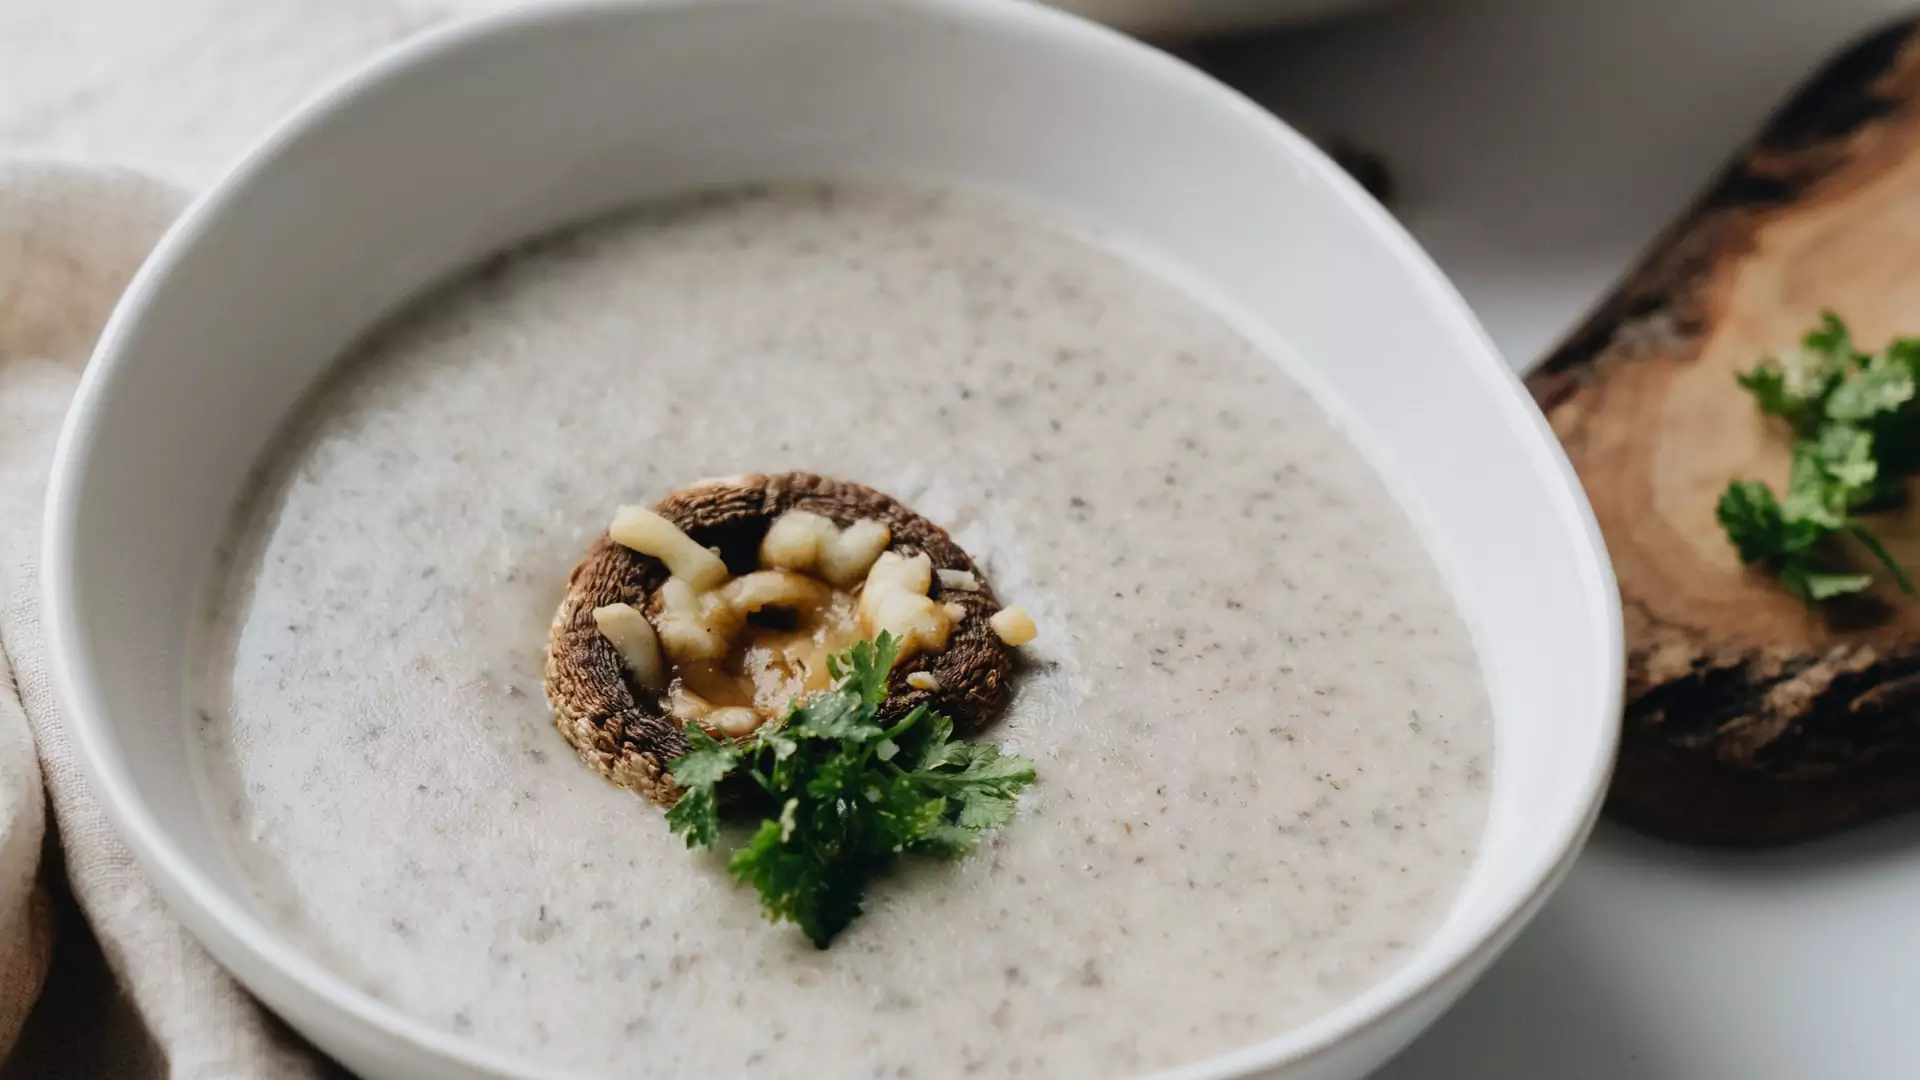 Przepis na zupę z suszonych grzybów z owocami. Jak smakuje to niecodzienne połączenie?